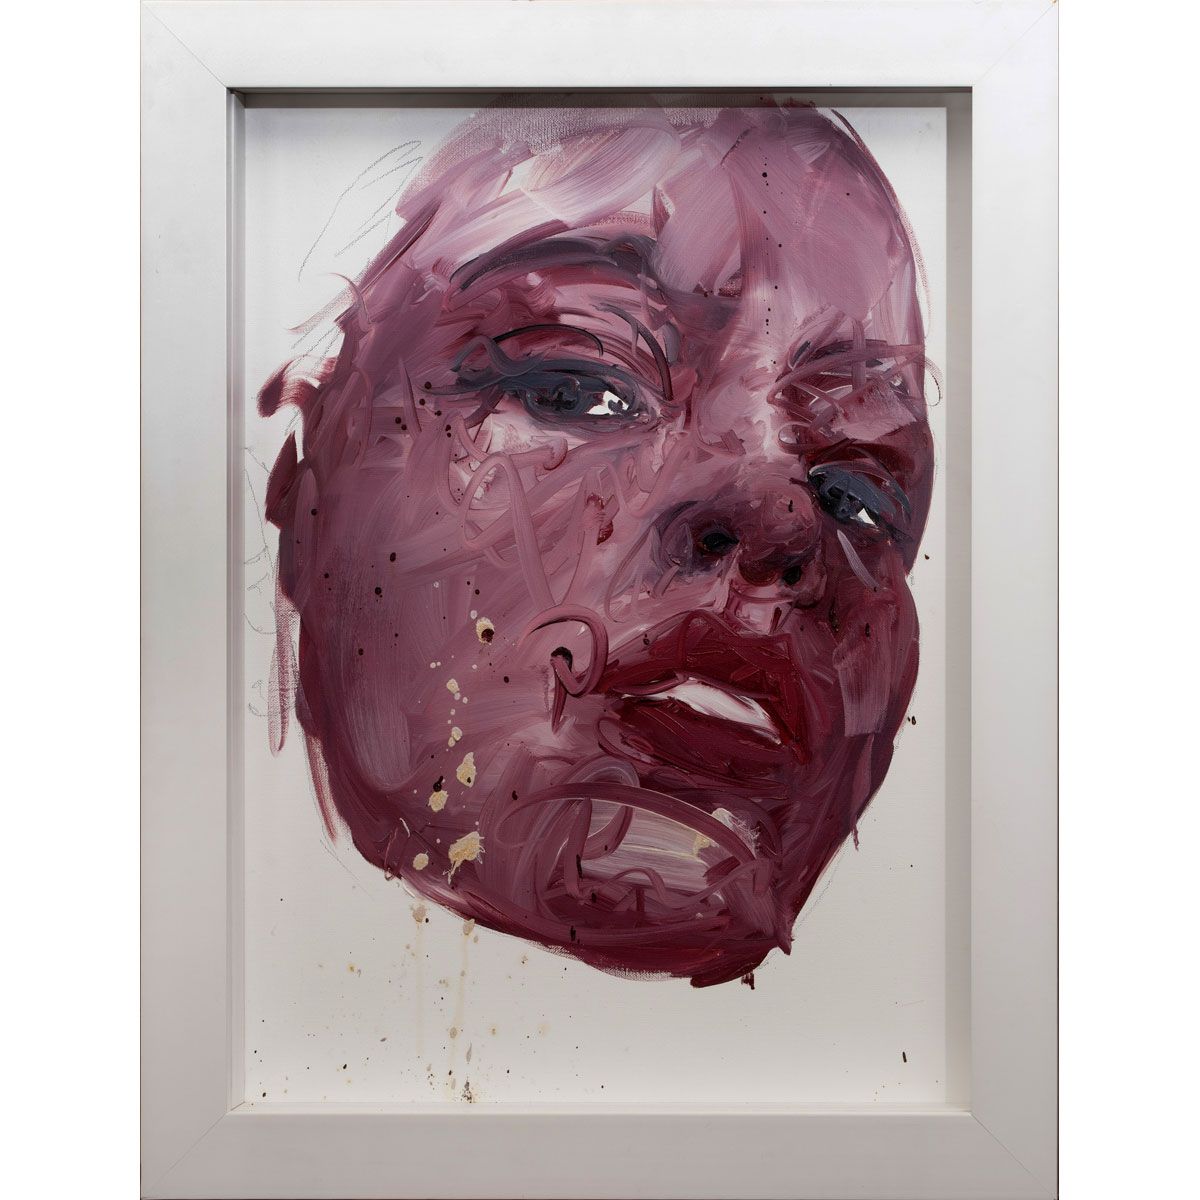 Null 菲利普-帕斯卡，法国人，生于1965年

肖像, 2010

布面油画

背面有签名和日期

73 x 53 厘米

证明书